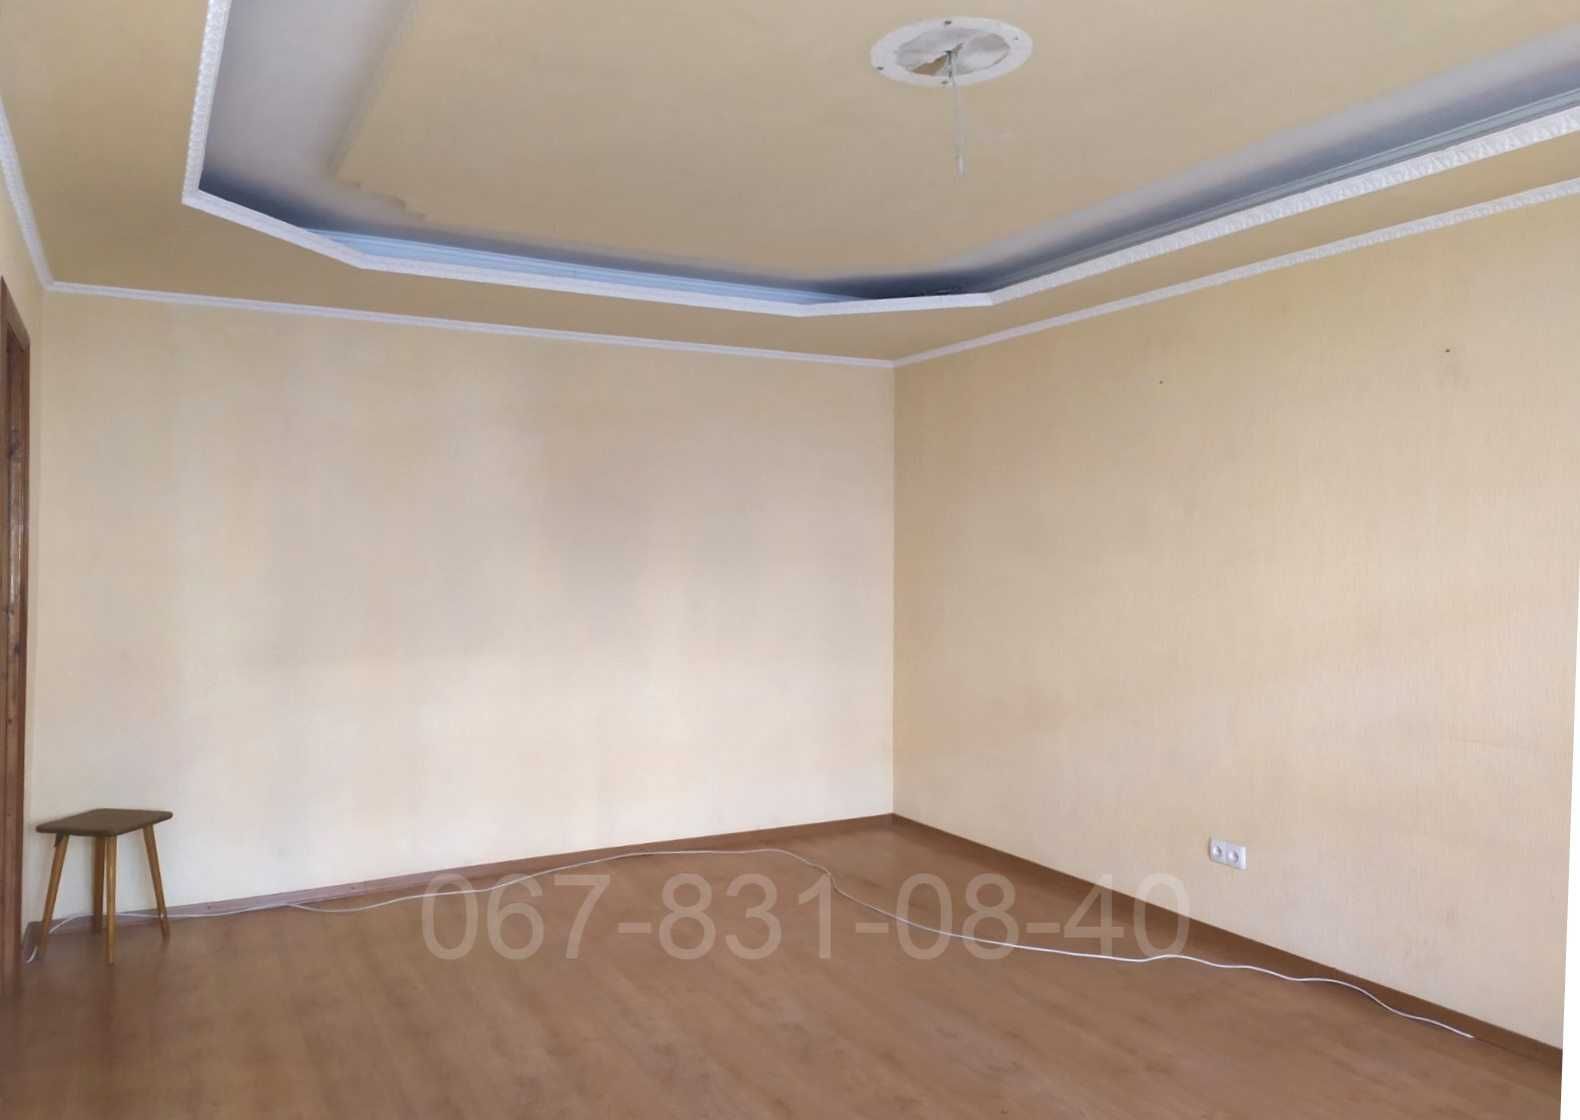 Продам НЕ стандартную квартиру на Левобережном-3 (4 комнаты, 2санузла)